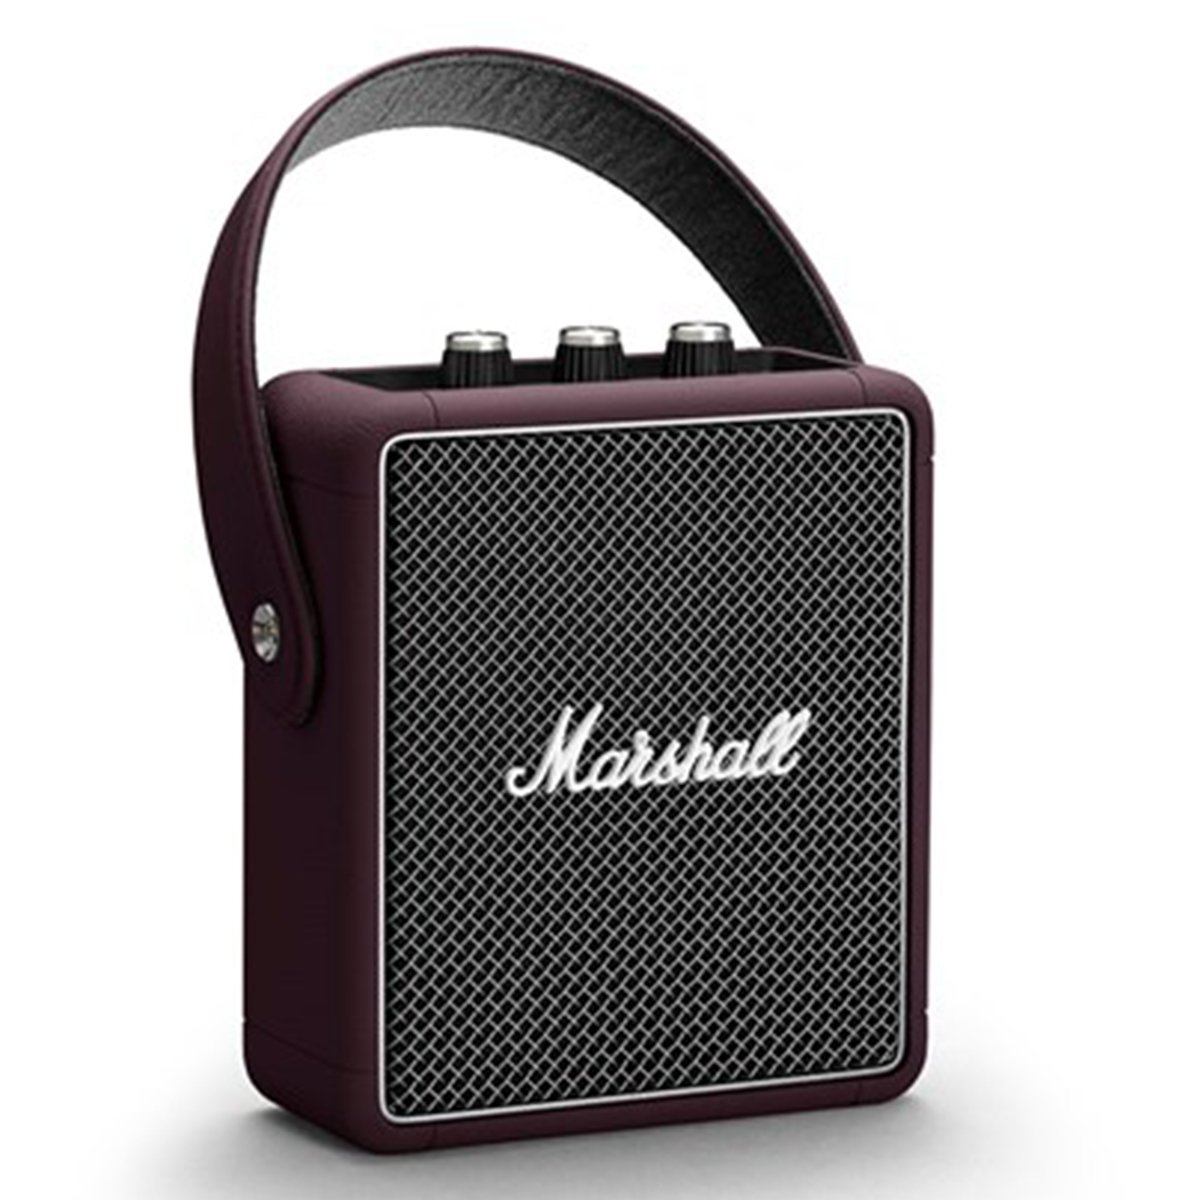 Marshall Stockwell II Burgundy Bluetooth Speaker